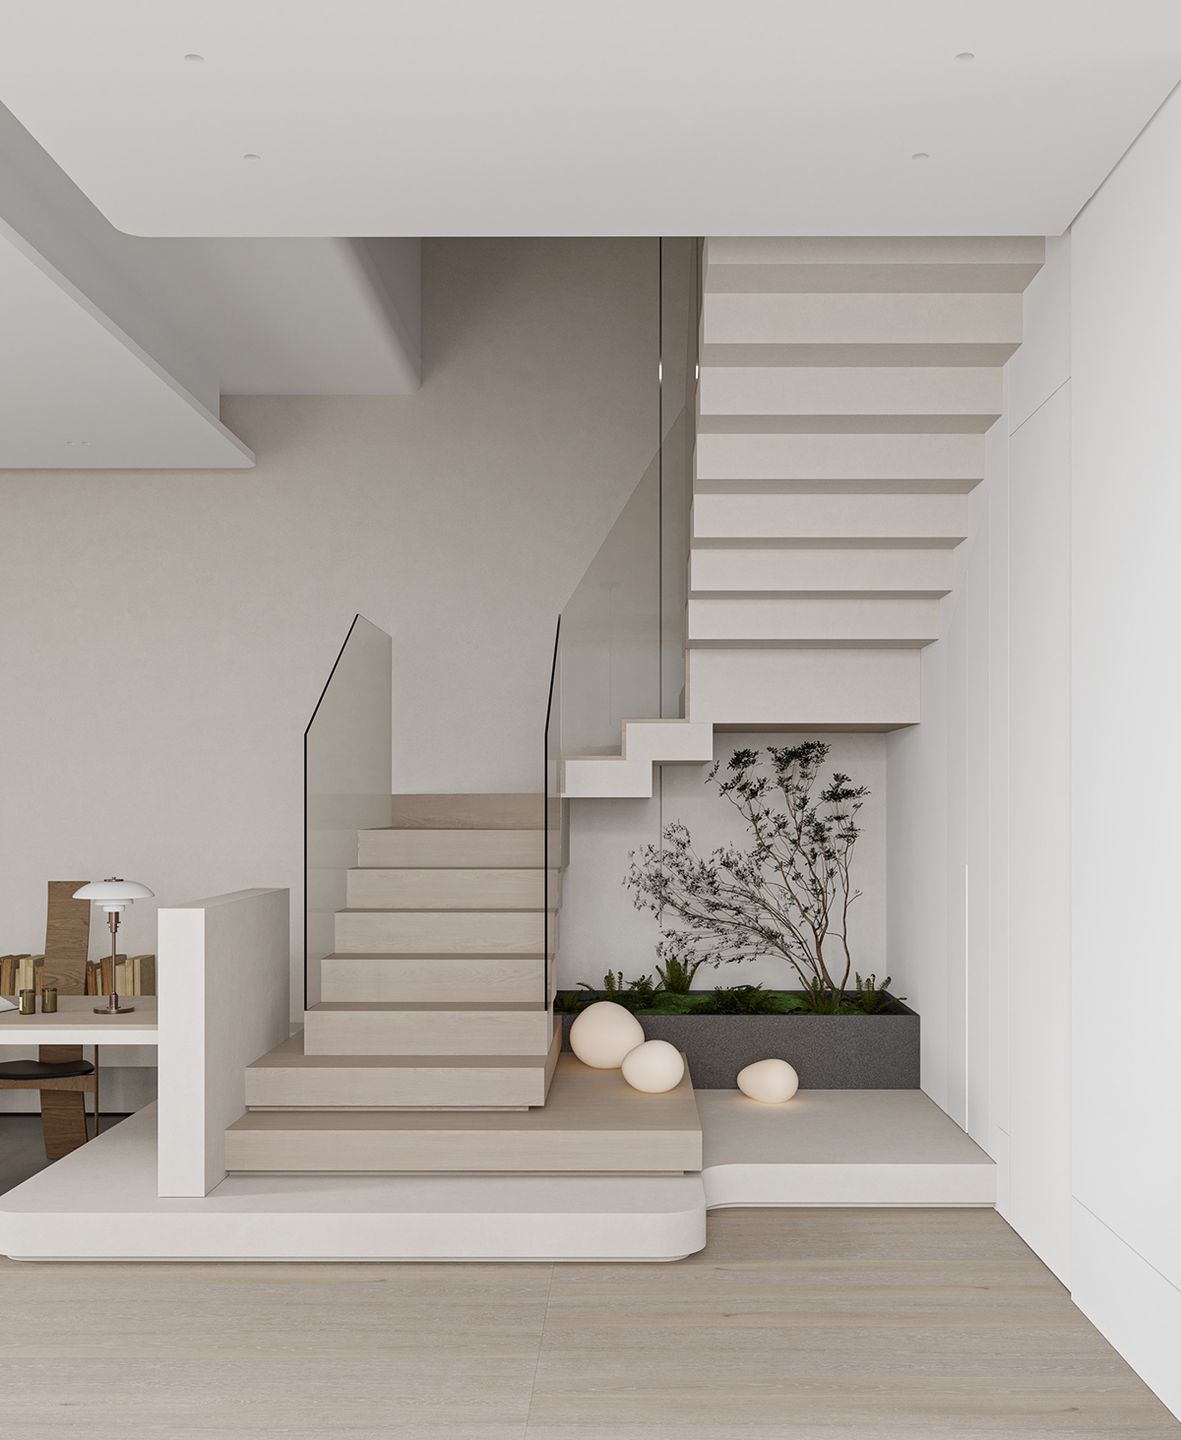 Pertimbangkan desain langkan dan sistem pencahayaan saat kamu ingin menghadirkan tangga modern minimalis.